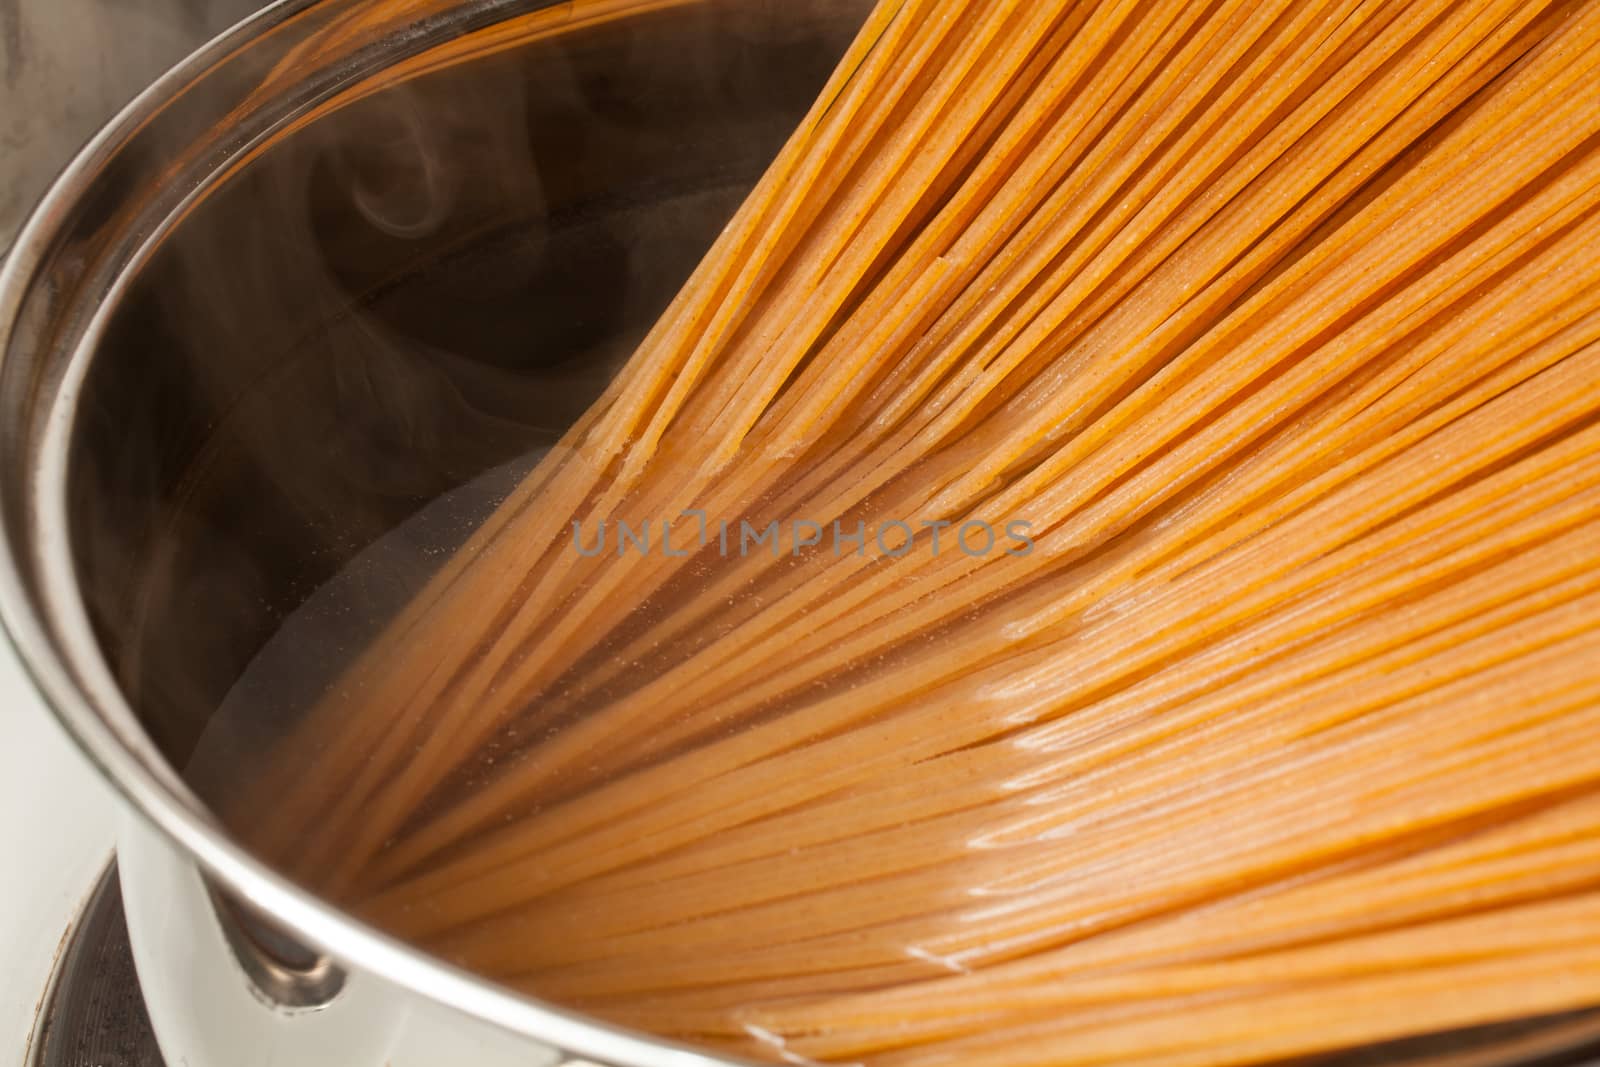 Wholemeal spaghetti by Portokalis